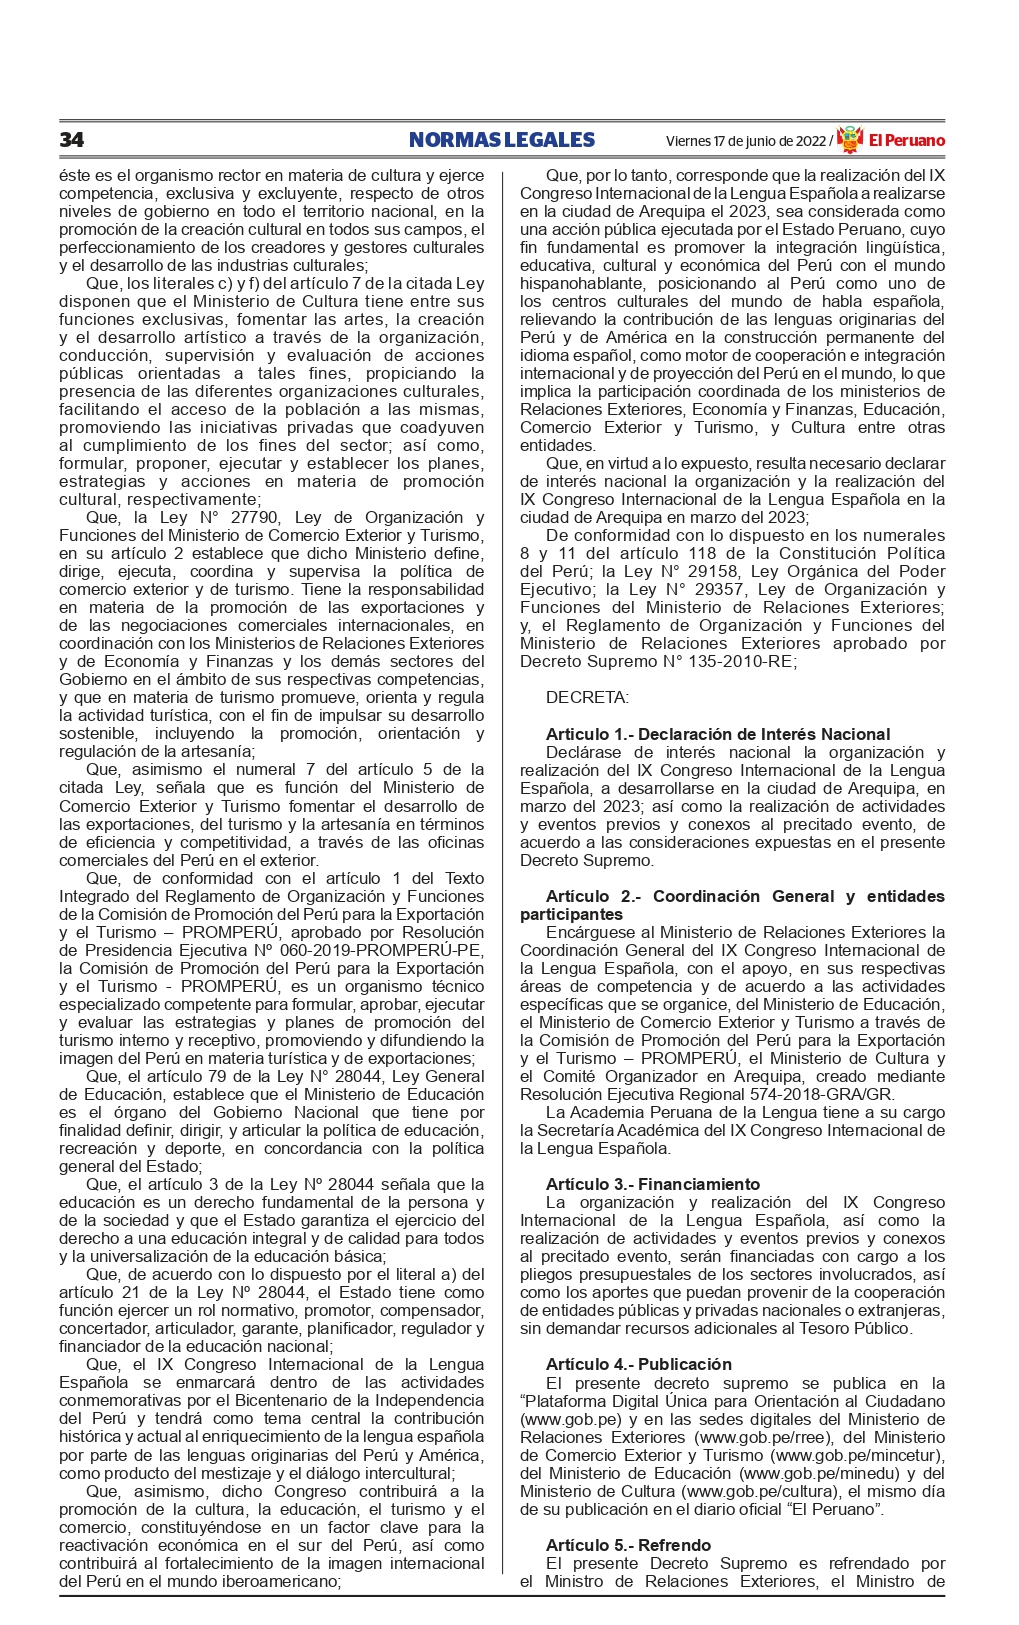 Decreto Supremo 037-2022-RE - Declara interes nacional organización IX Congreso Inter de la Lengua - 2